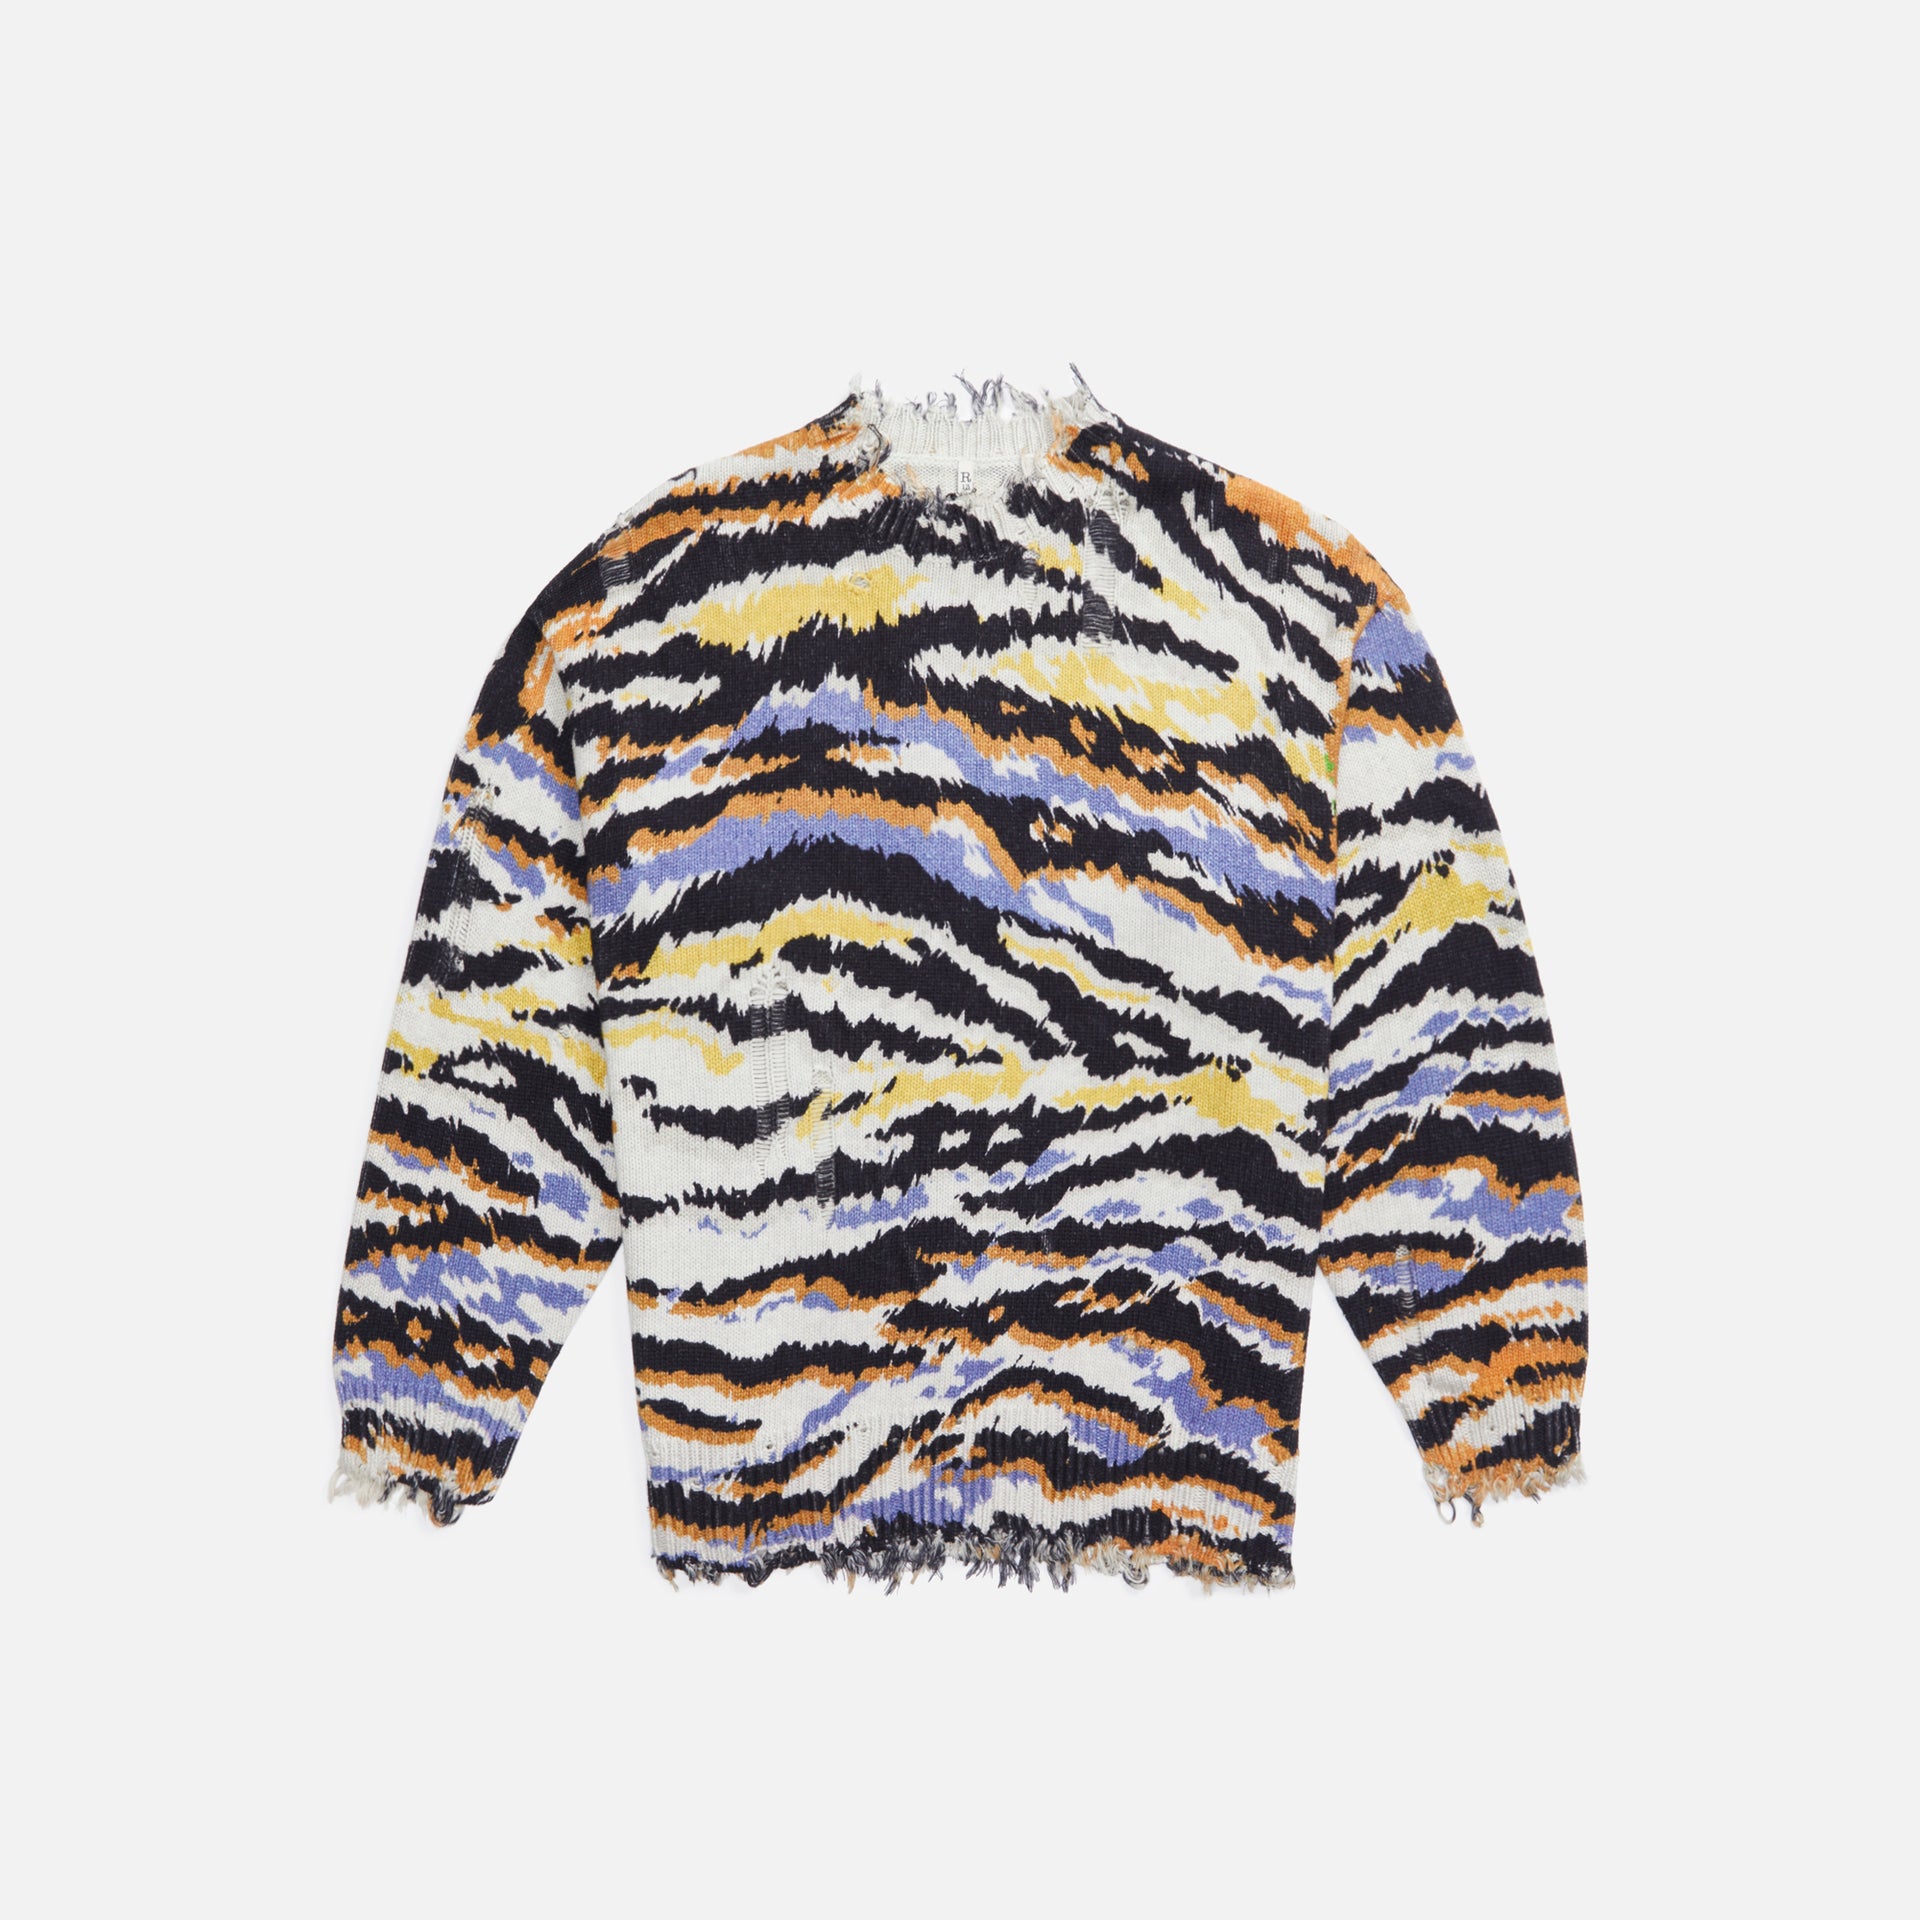 R13 Sweater - Multi Zebra Print